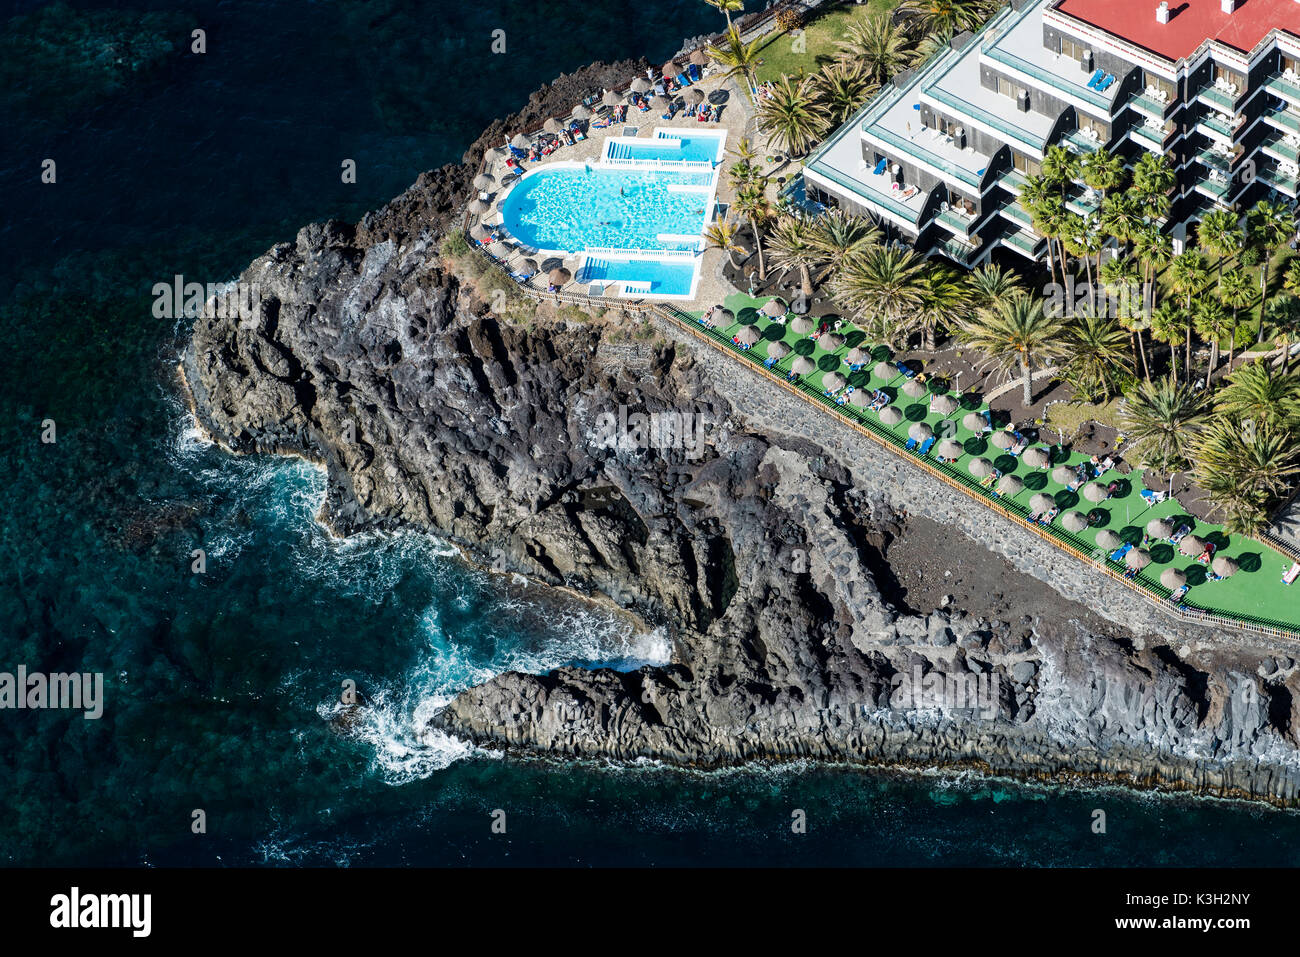 Piscina El hotel Sol, Puerto de Naos, costa Atlántica, Costa de volcán,  fotografía aérea, isla de La Palma, Canarias, España Fotografía de stock -  Alamy